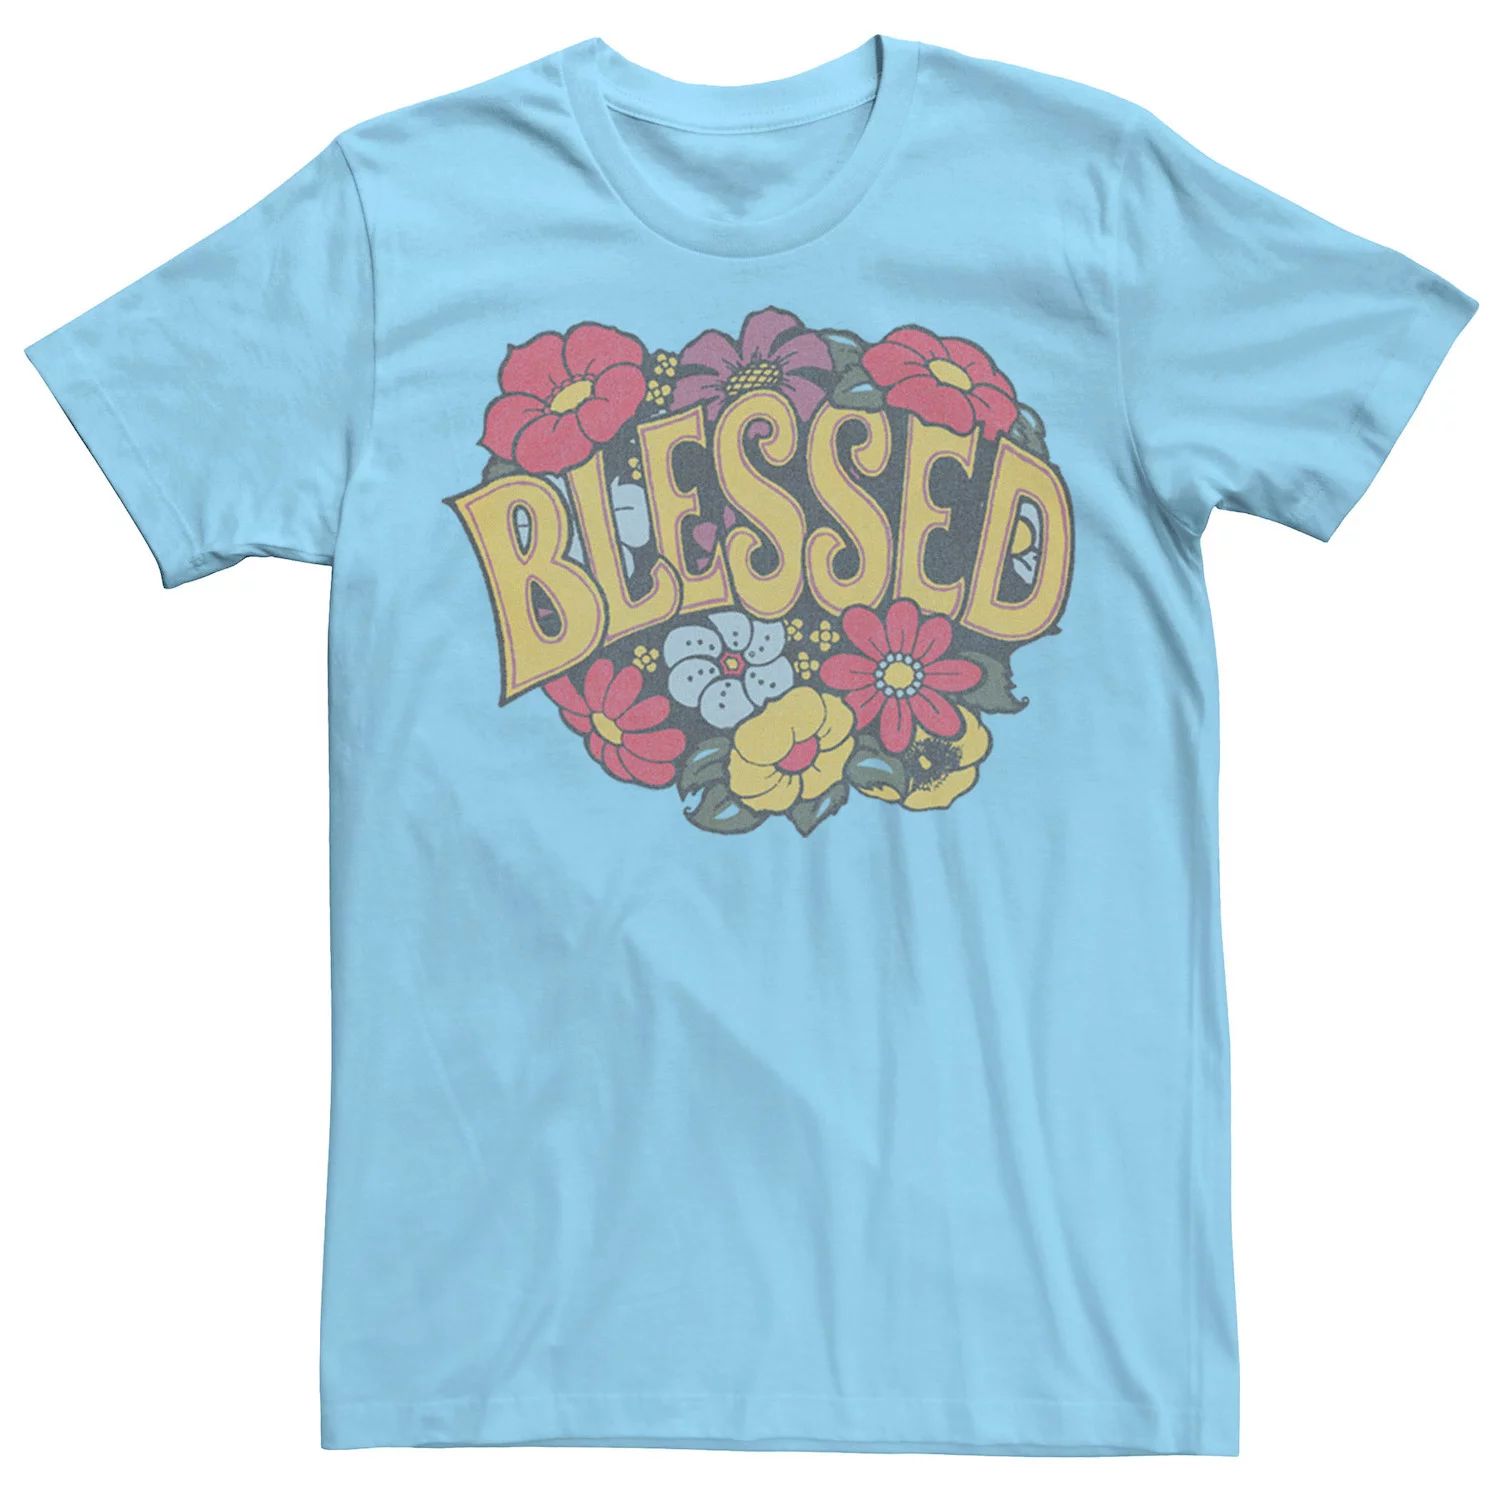 Мужская футболка с цветочным венком Blessed Licensed Character, светло-синий мужская футболка зайка с цветочным венком l желтый